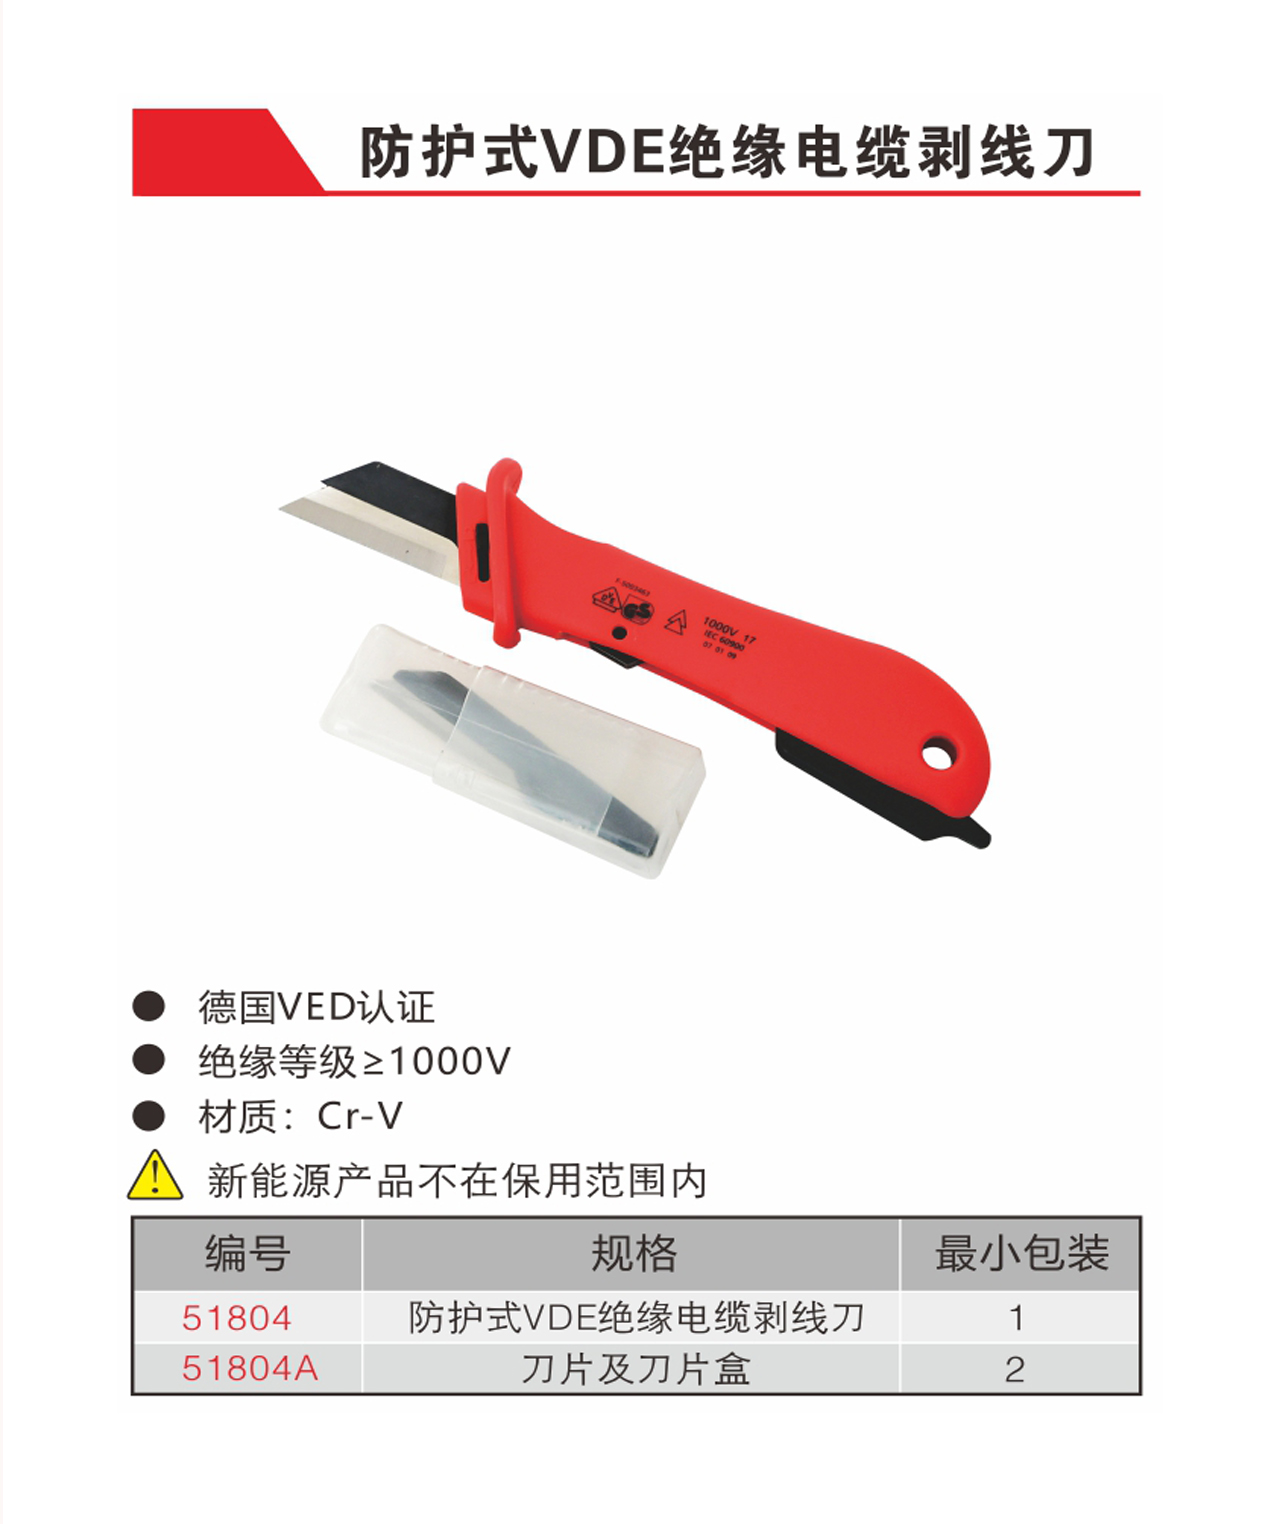 防护式VDE绝缘电缆剥线刀（NO.51804-51804A）